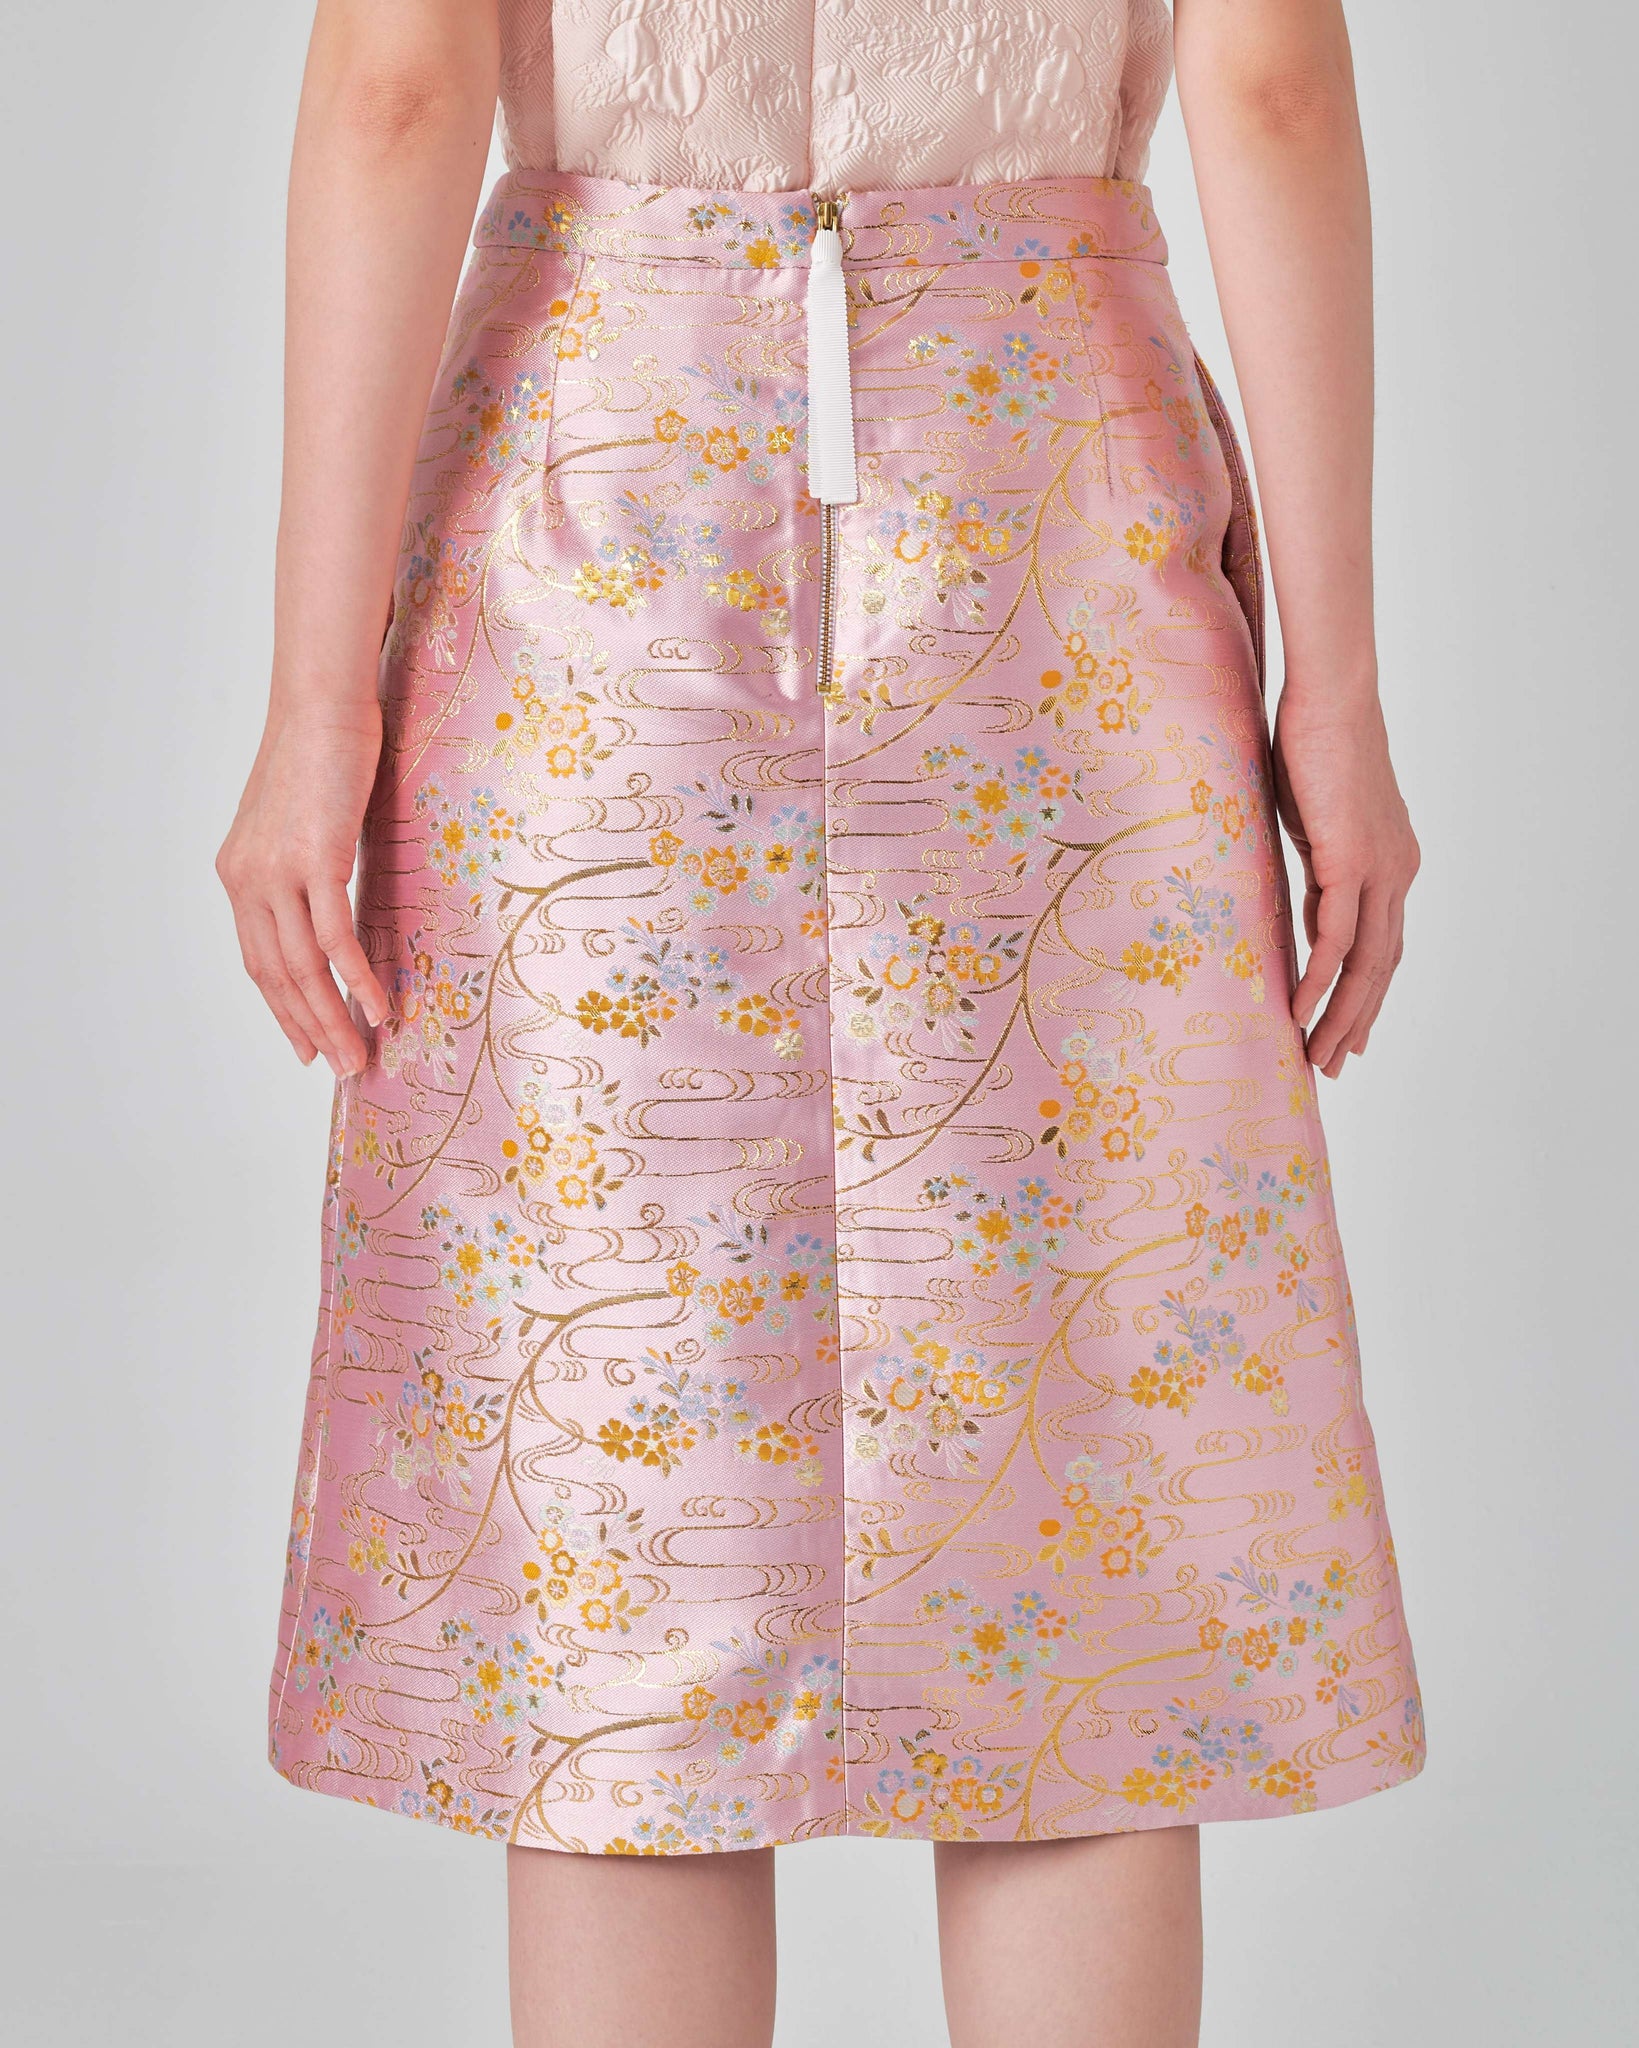 Ying Skirt in Blush